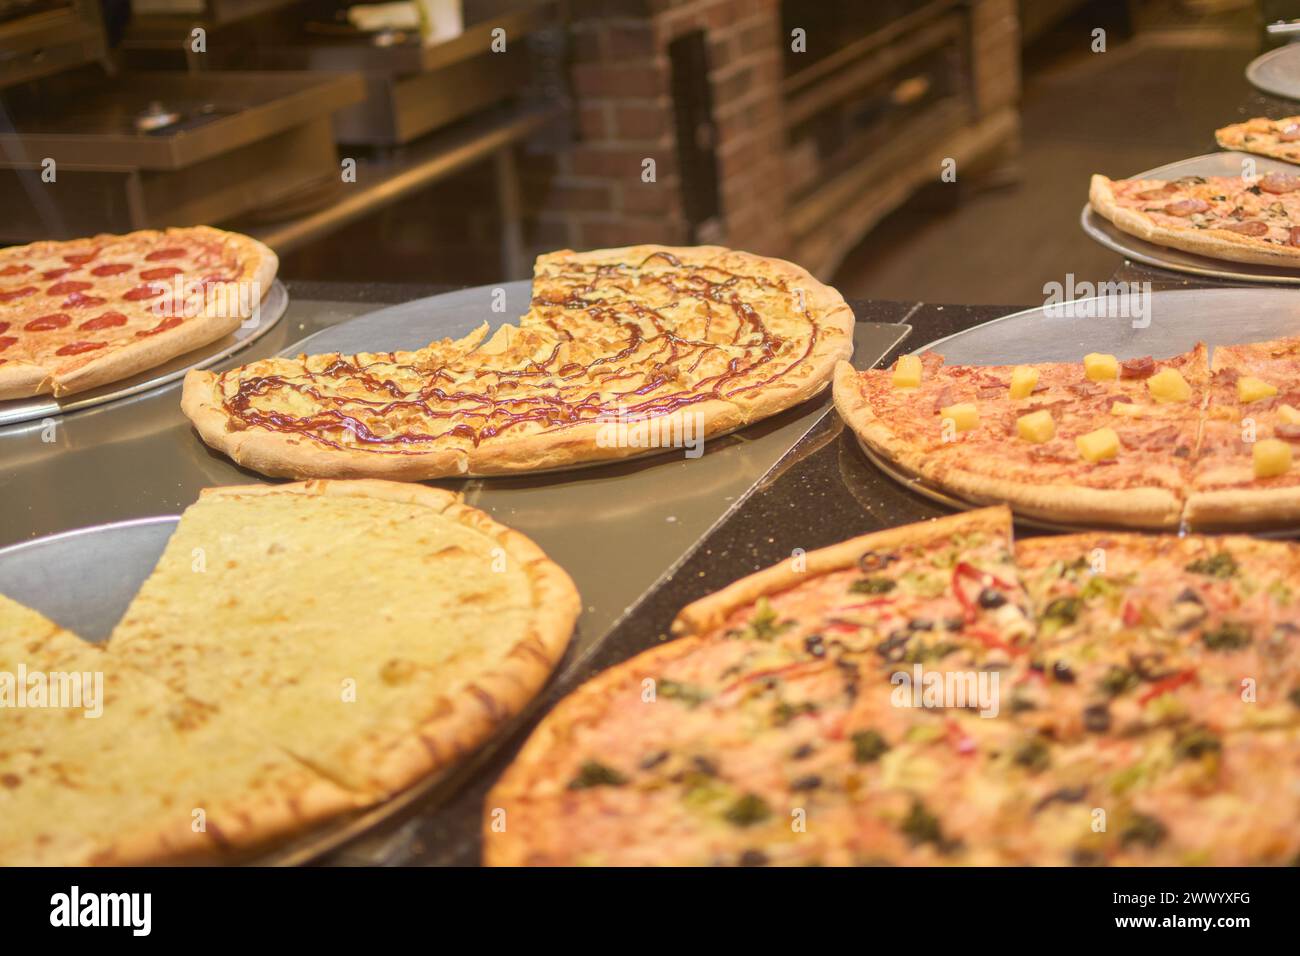 Immagine che mostra una selezione di pizze gourmet con ingredienti diversi, con un'atmosfera calda e accogliente. Le pizze sono appena sfornate e pronte per essere Foto Stock